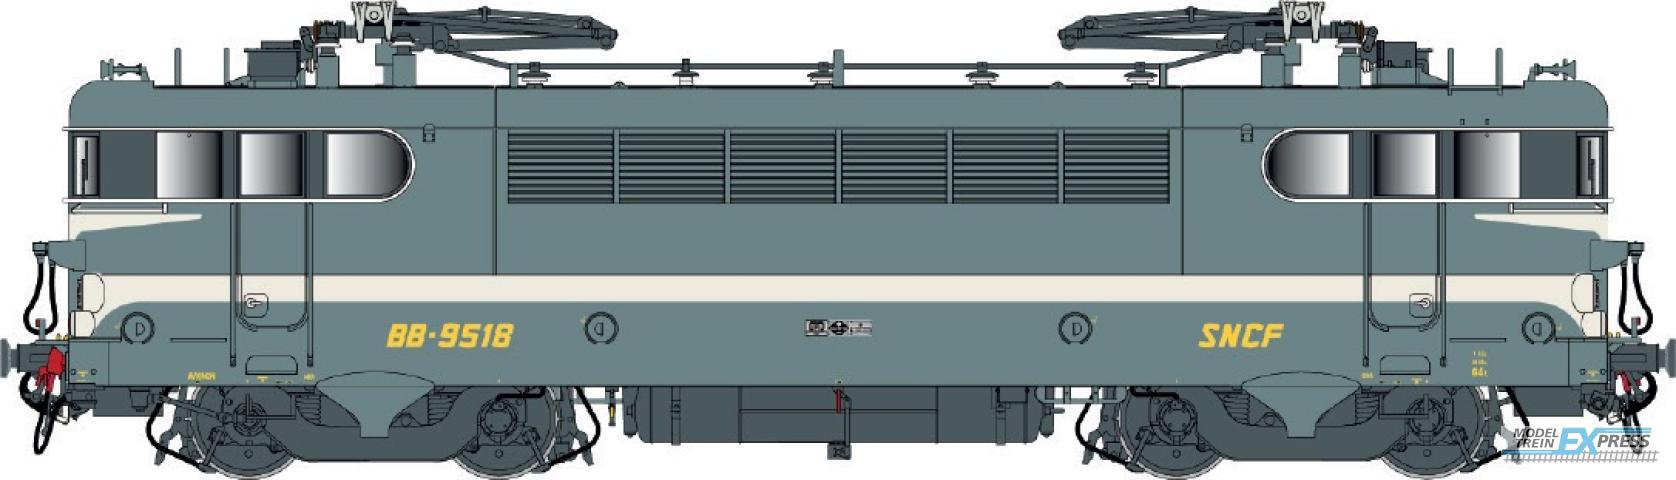 LS Models 10227 BB 9400, groen blauw, brede witte lijn, geschilderde snor, vet logo  /  Ep. IV  /  SNCF  /  HO  /  DC  /  1 P.